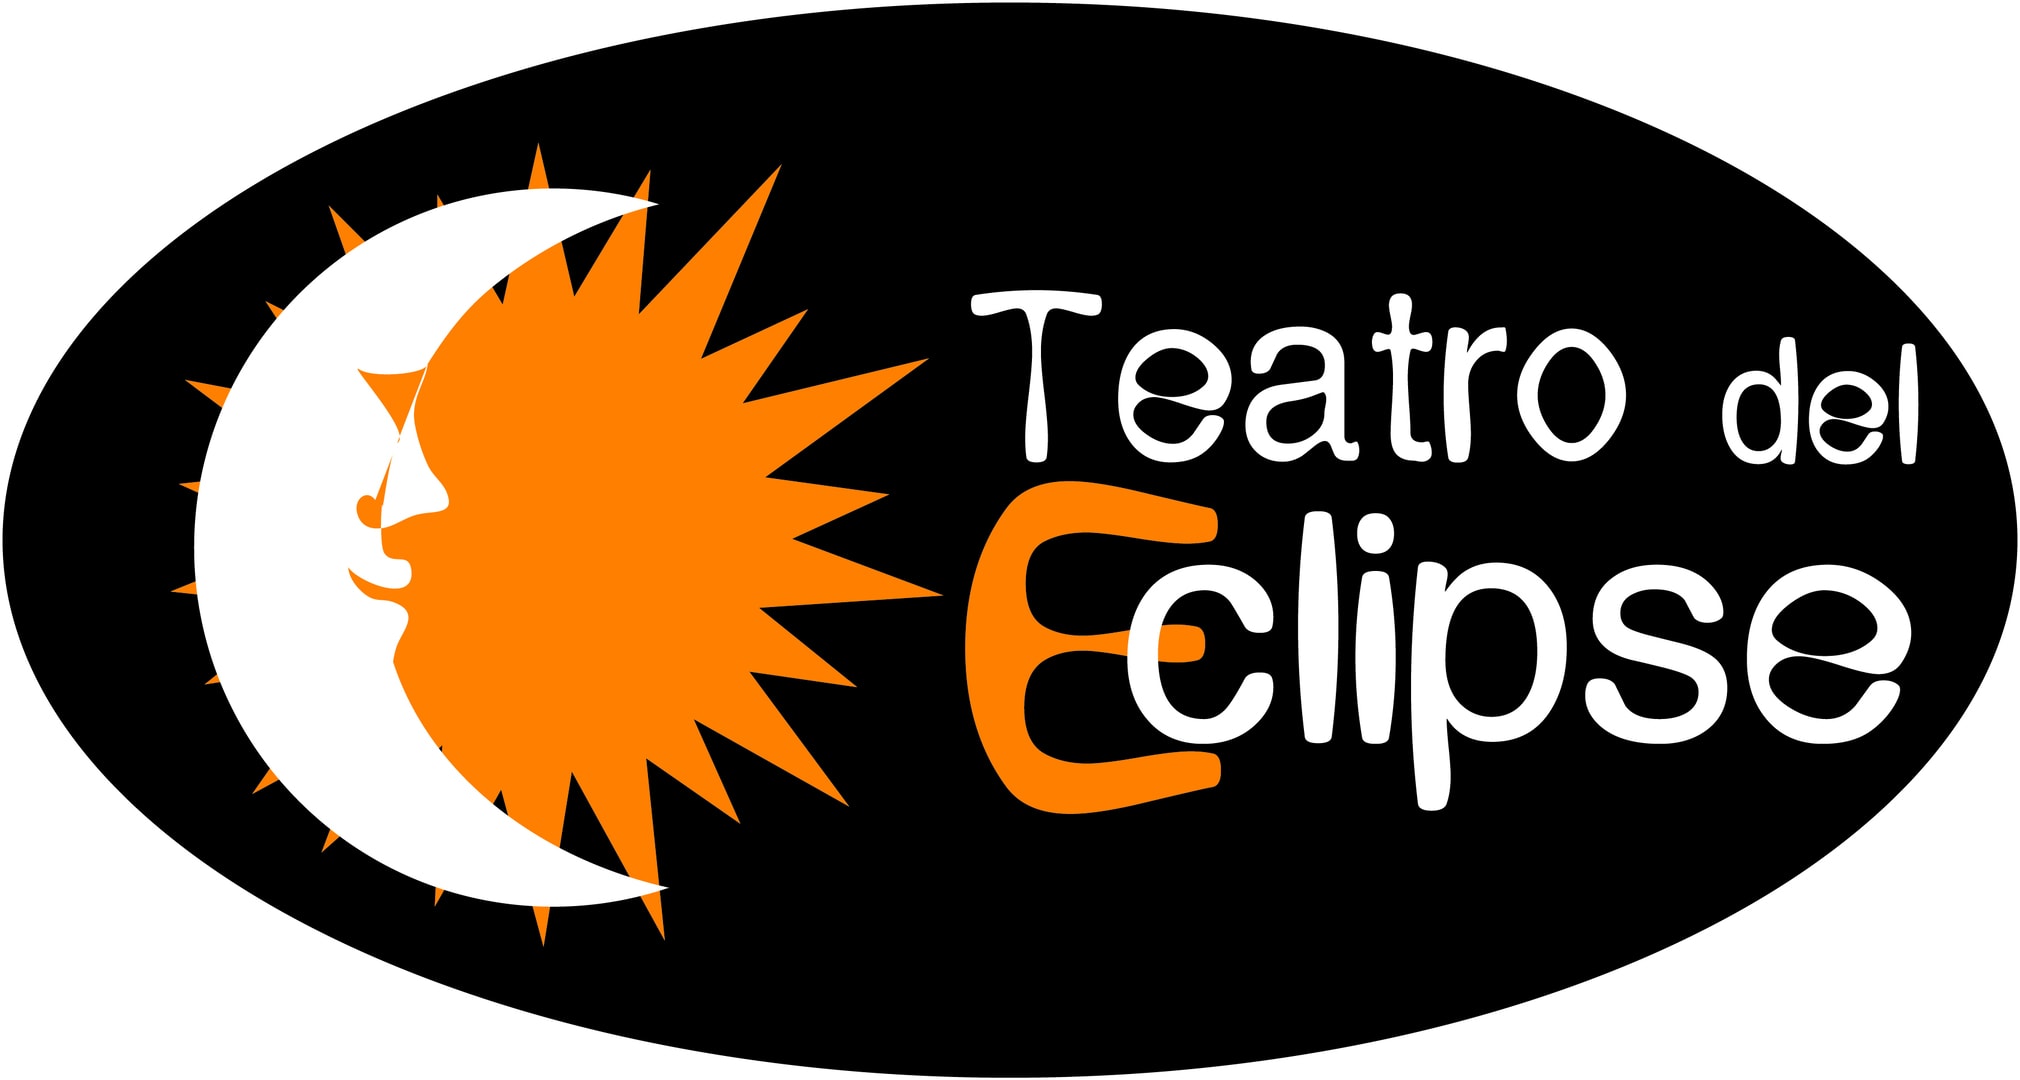 Resultado de imagen de 'Al son del Teatro' de la compaÃ±Ã­a Teatro del Eclipse